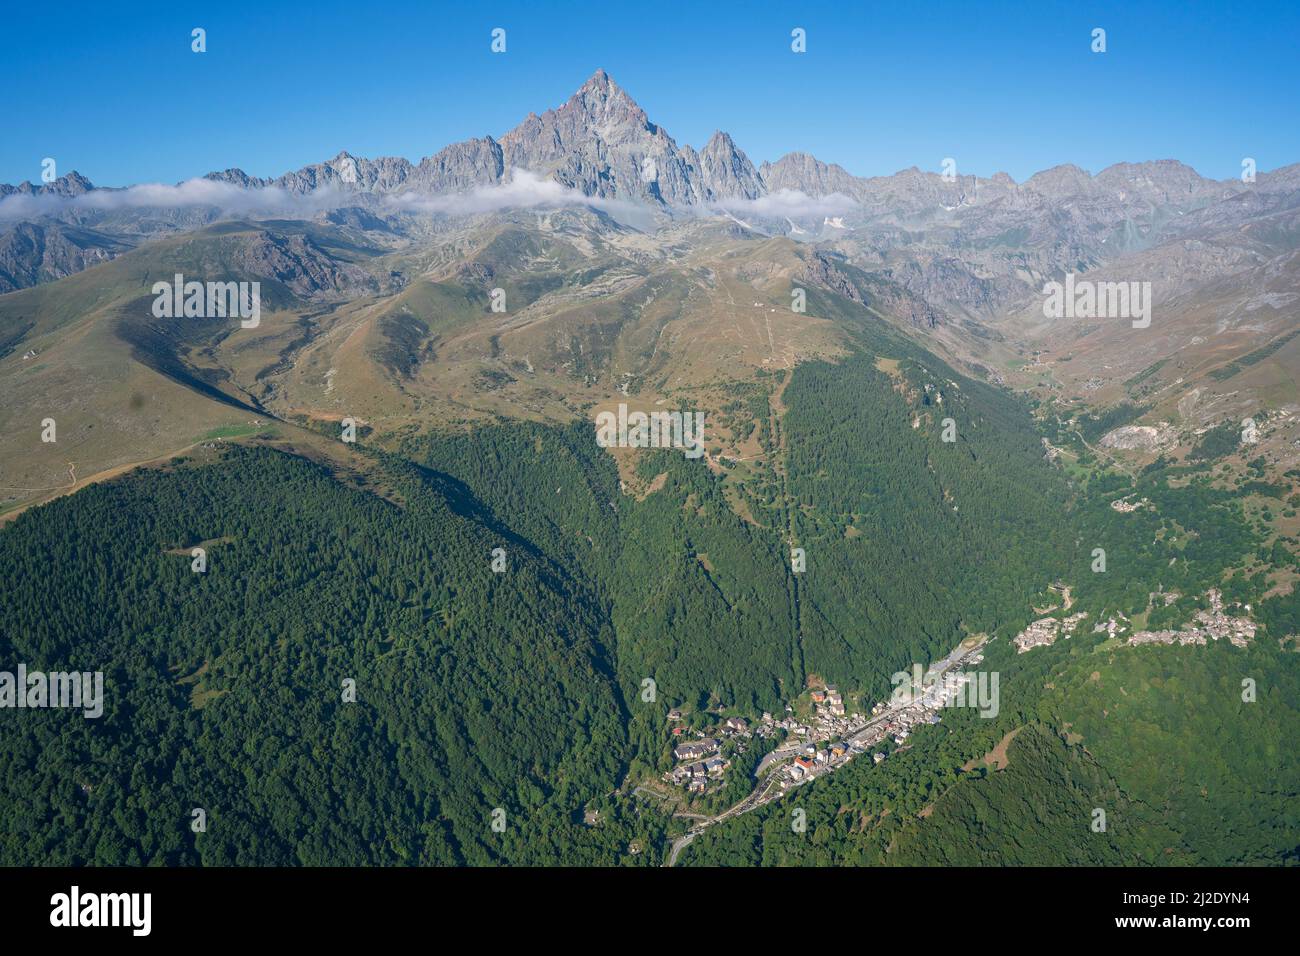 VUE AÉRIENNE. Monte Viso (3841m) vue du nord-est avec la ville de Crissolo dans la vallée du po. Province de Cuneo, Piémont, Italie. Banque D'Images